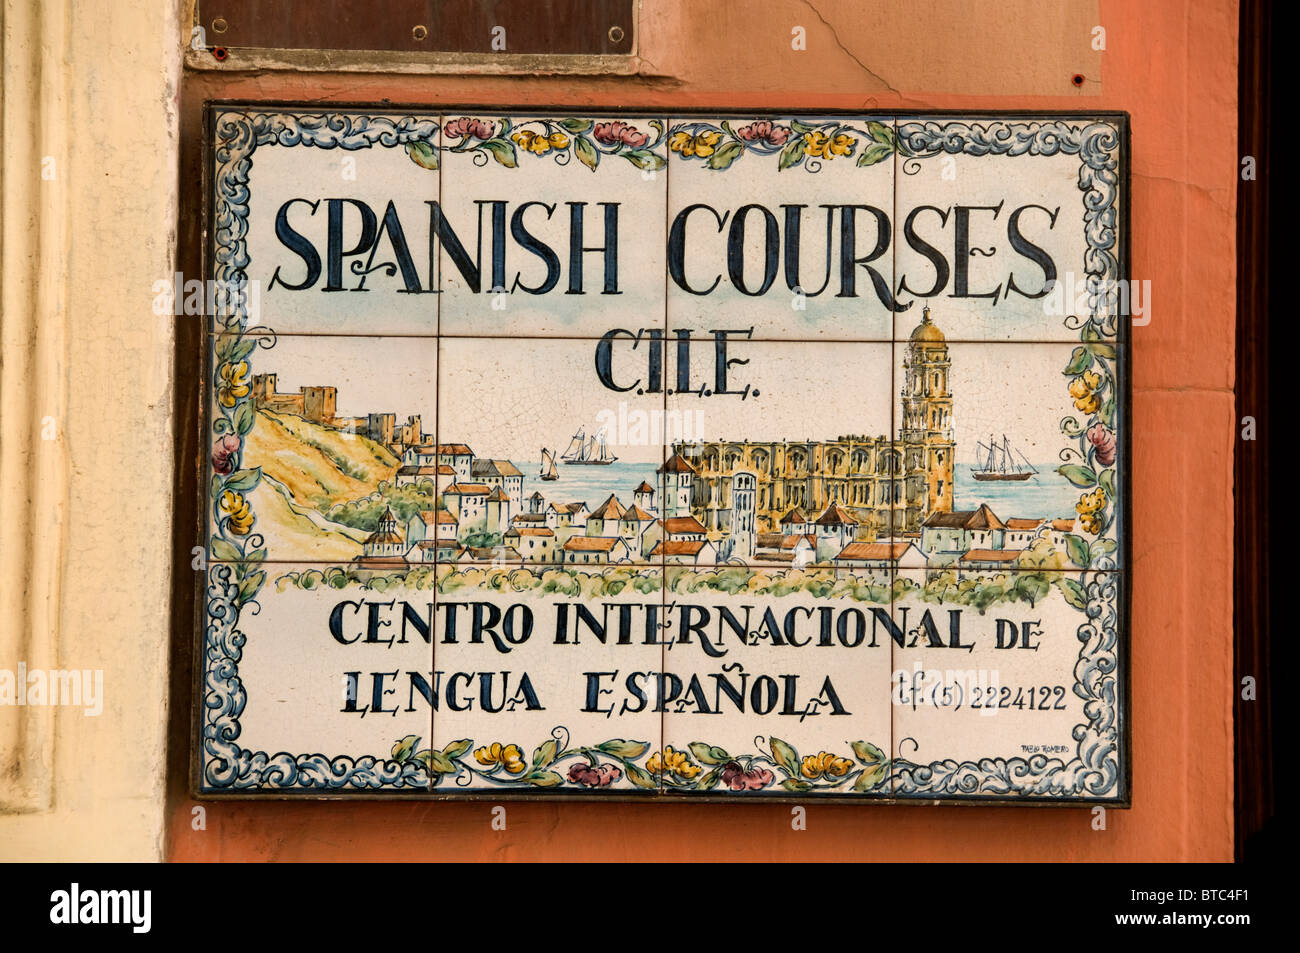 Malaga Spain Andalusia Spanish Language courses Stock Photo